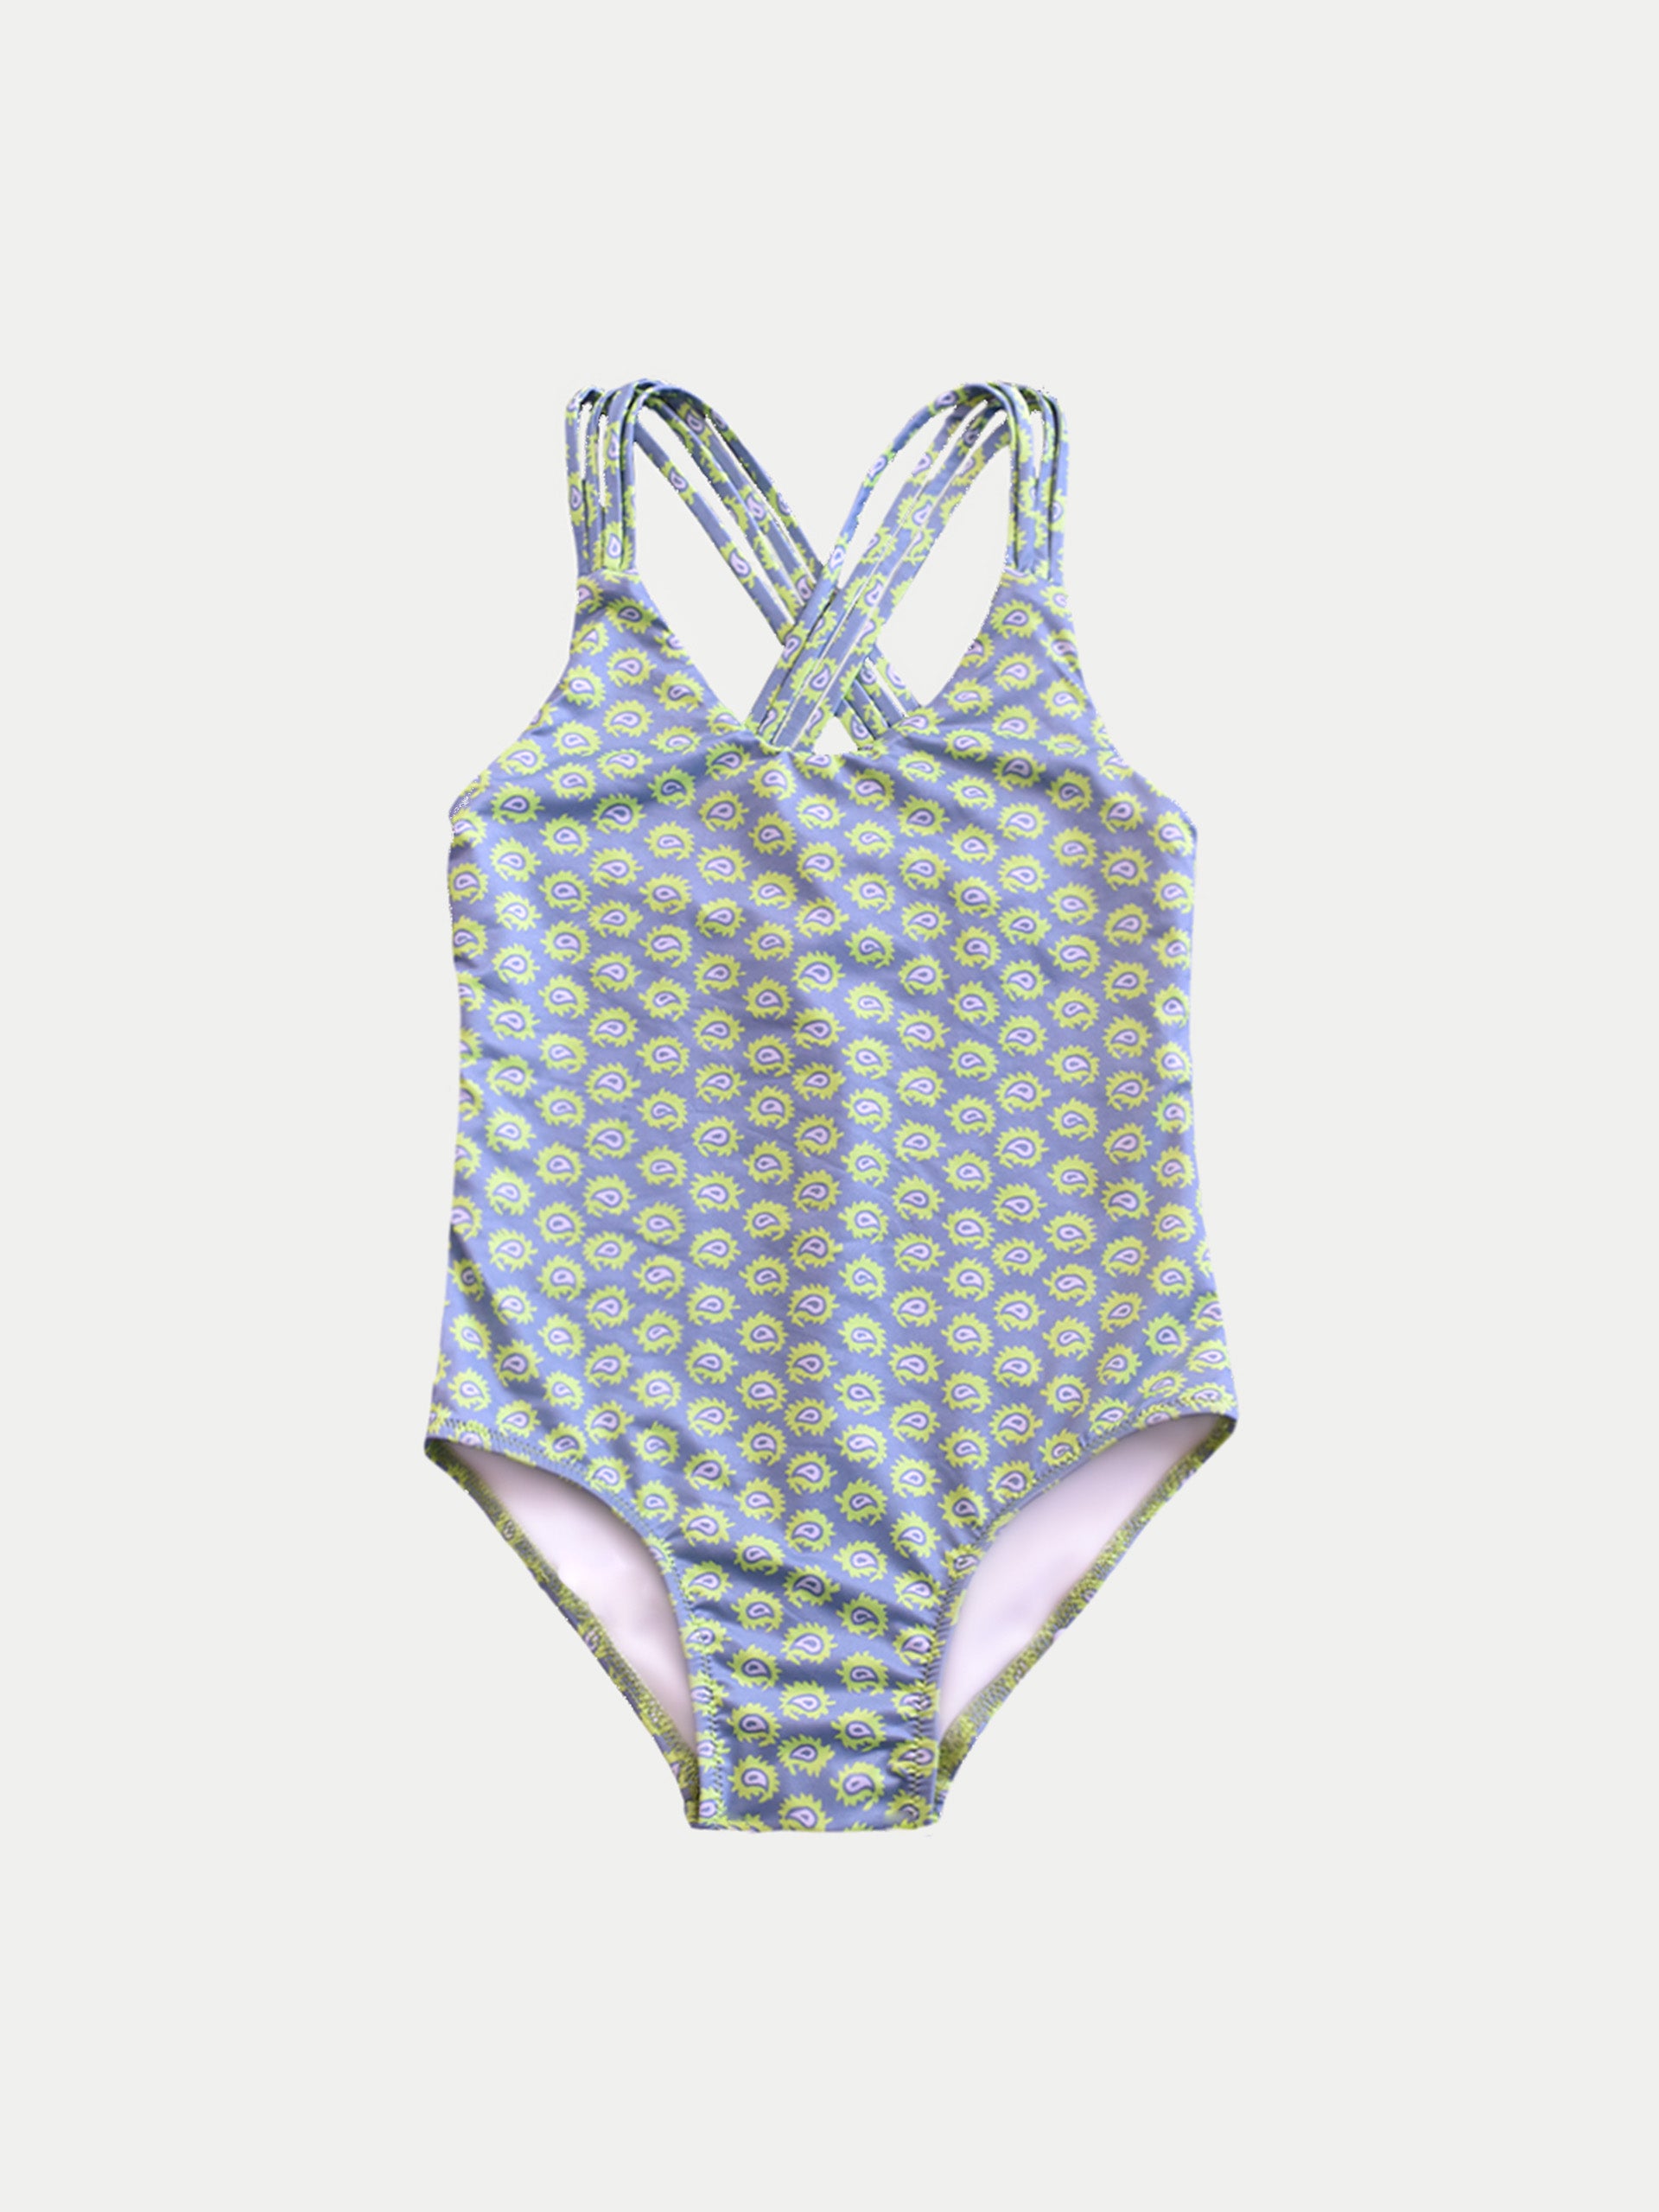 ‘Electric Green’ Girls Swimwear by 98 Coast Av.